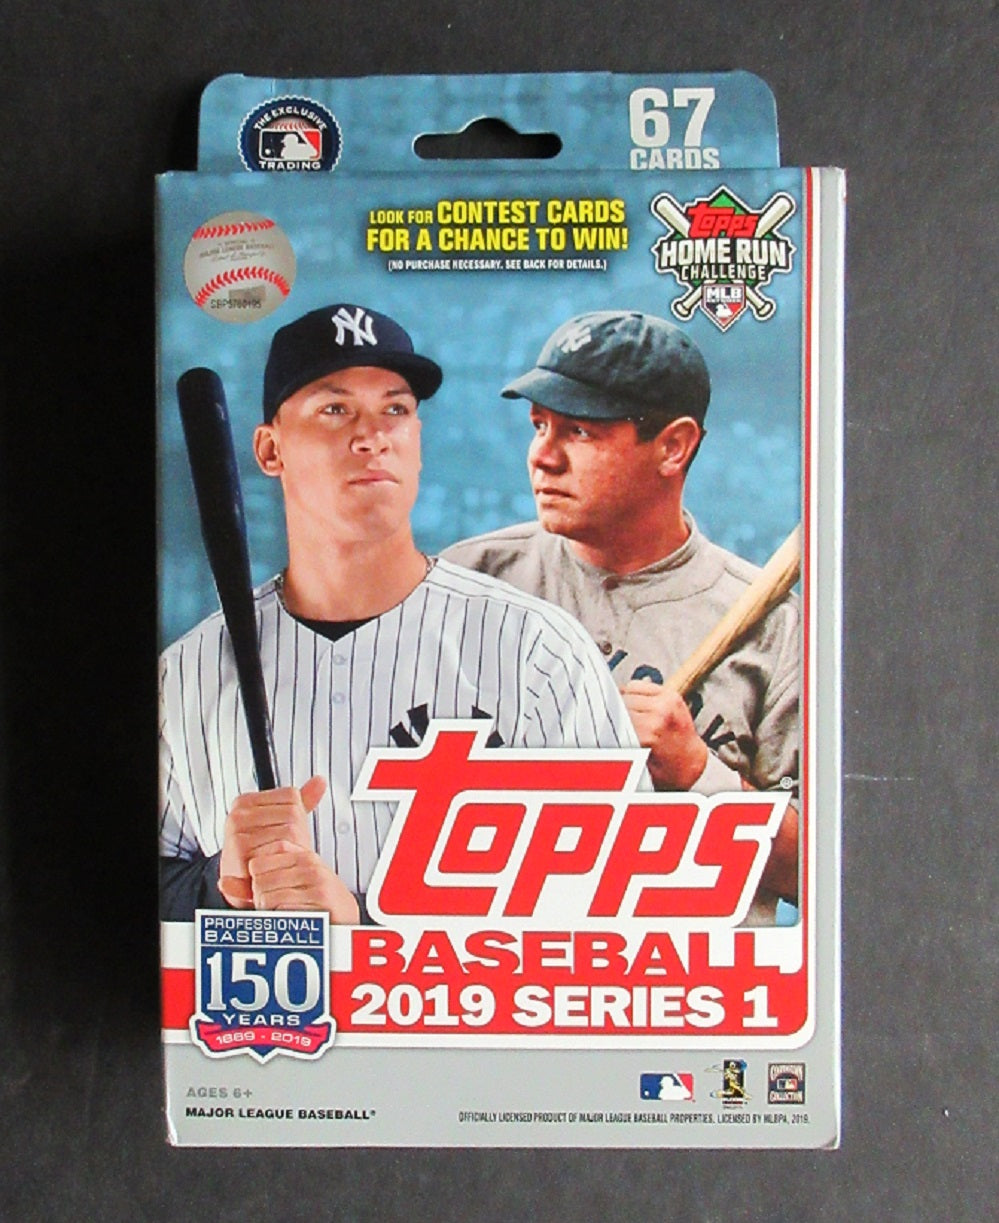 2019 Topps Baseball Series 1 Hanger Box (67 Cards)